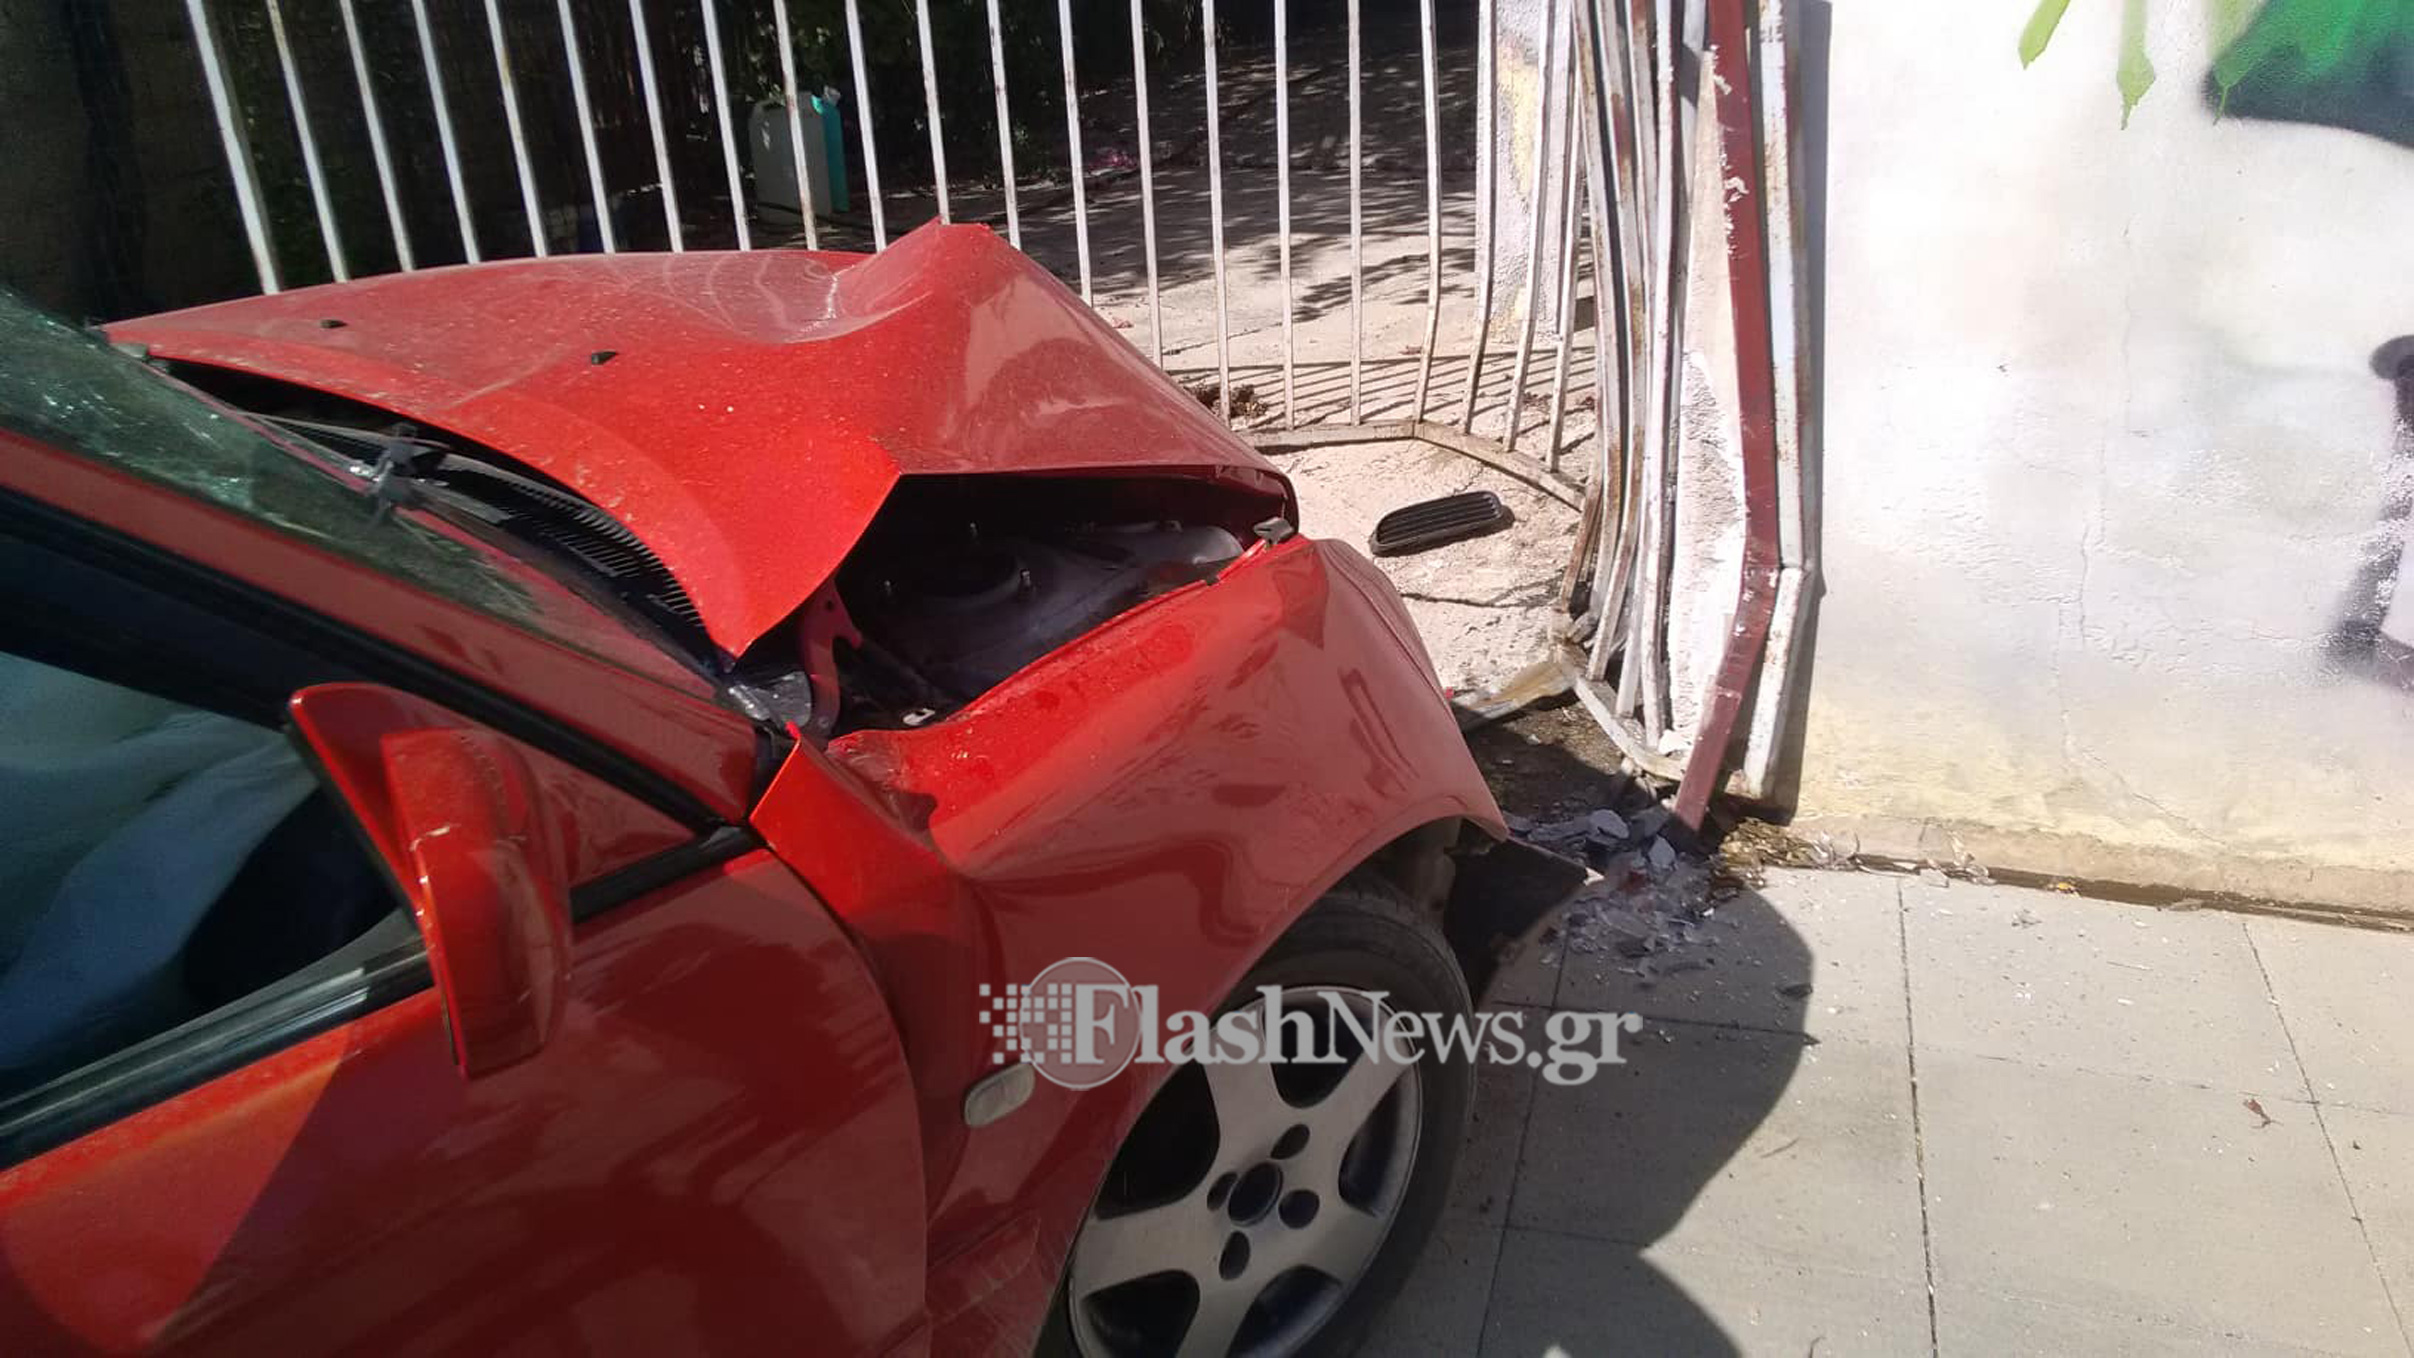 Χανιά: Έστριψε για να αποφύγει άλλο αυτοκίνητο και έπεσε σε είσοδο σπιτιού (φωτο)